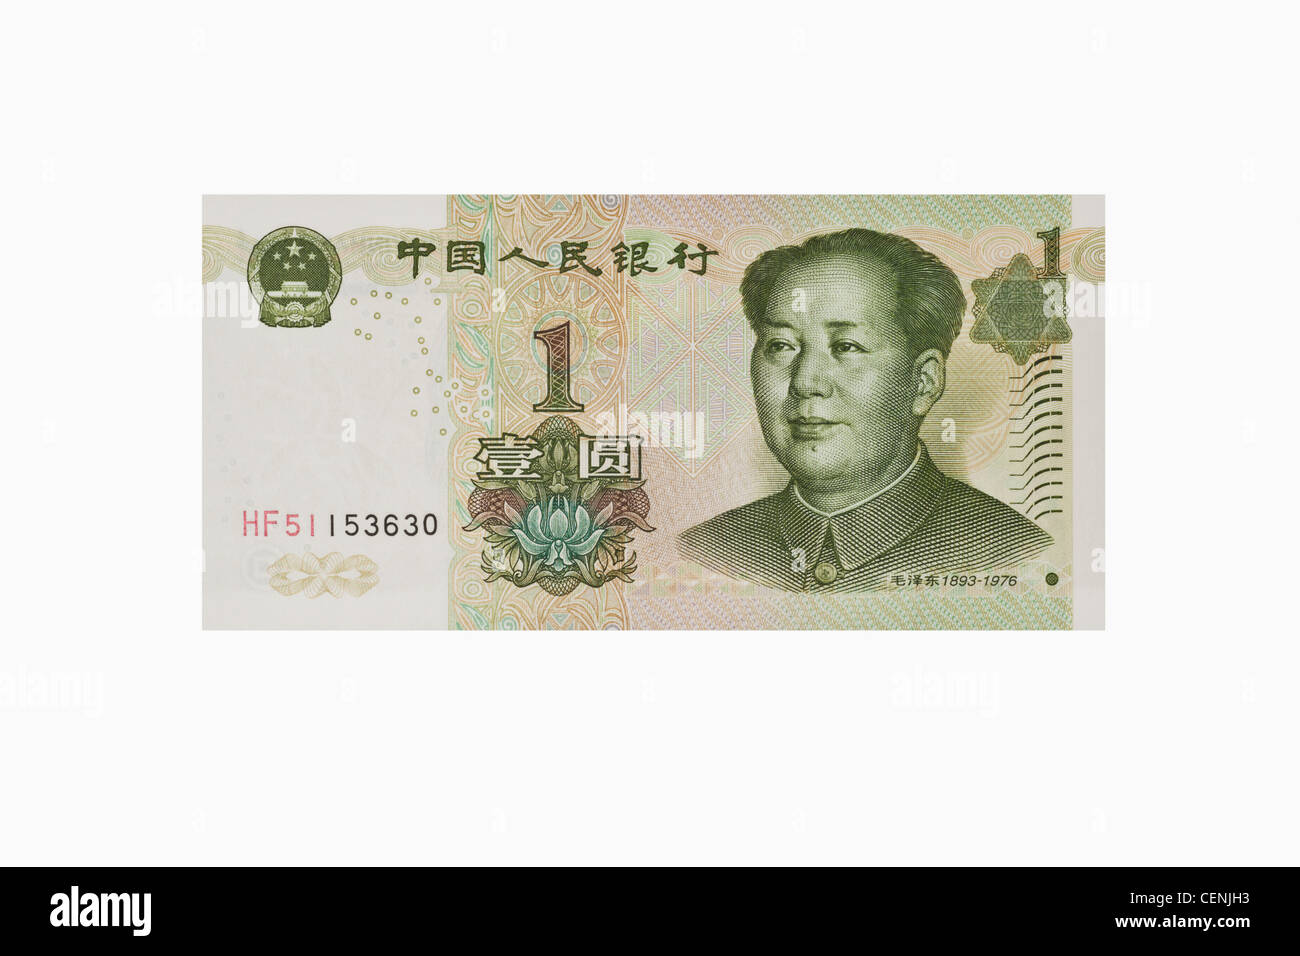 1 yuan bill avec le portrait de Mao Zedong. Le renminbi, la monnaie chinoise, a été introduit en 1949. Banque D'Images